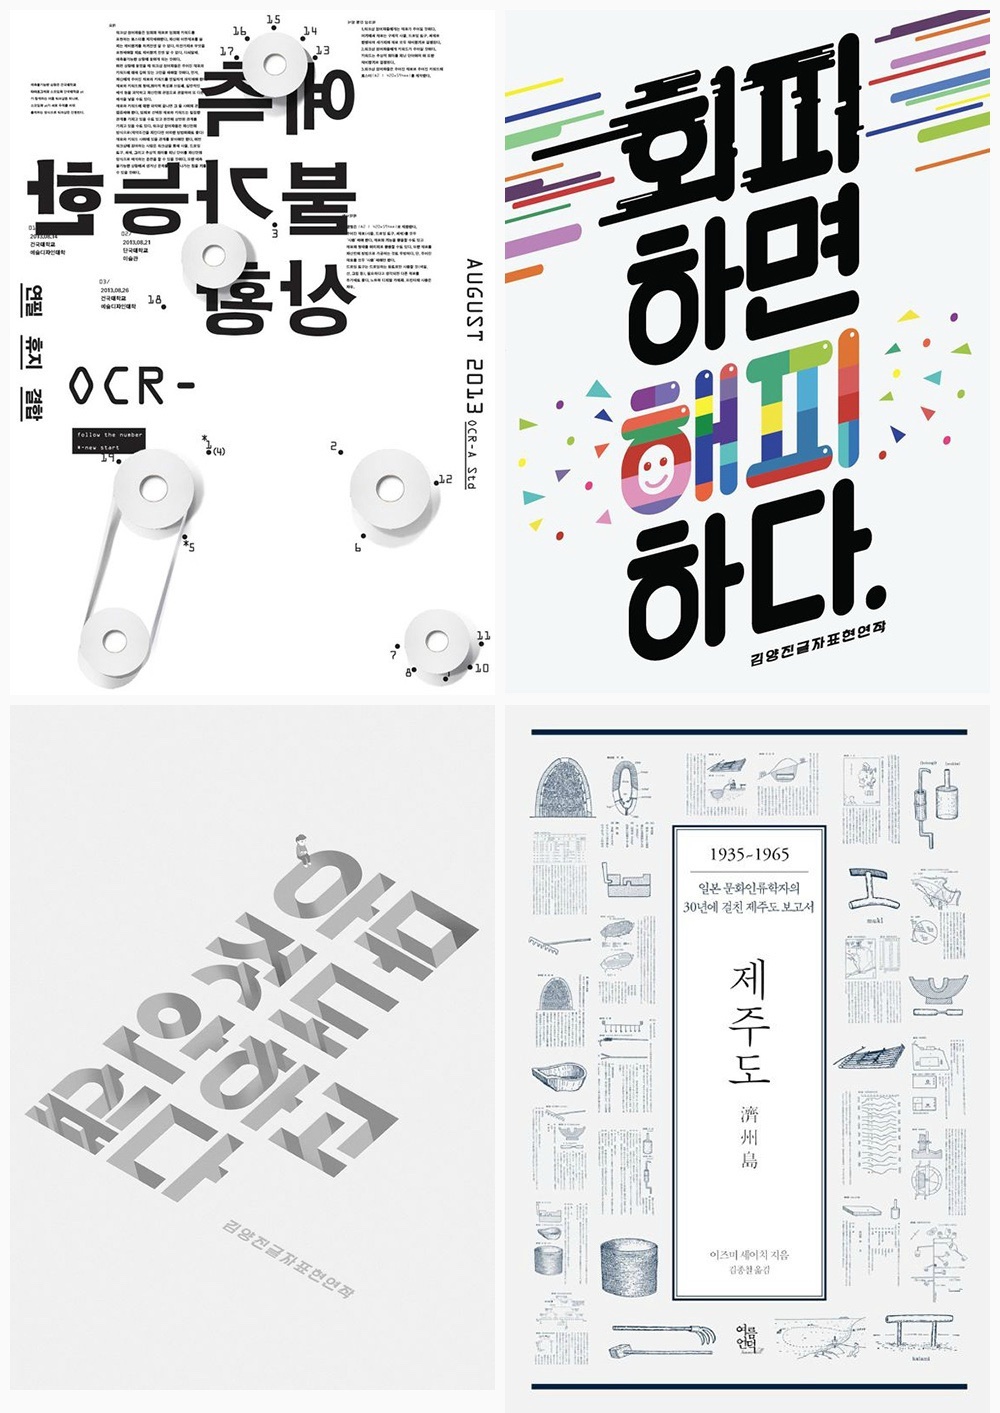 36个来自韩国的文字排版设计